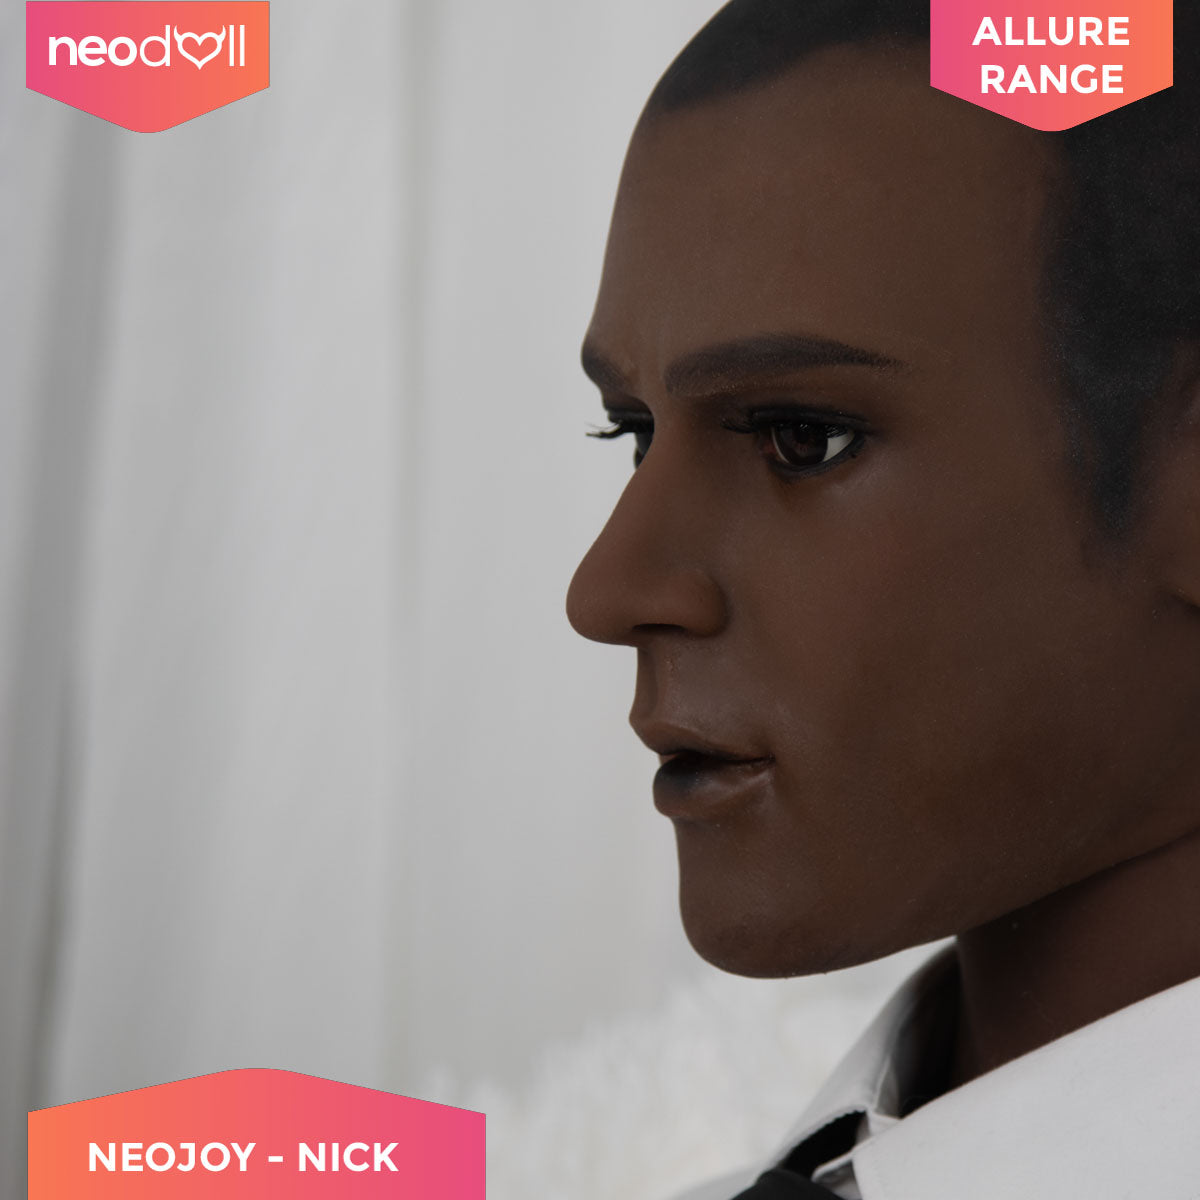 Neodoll Allure - Nick Head With Male Sex Doll Torso - Black - 23cm Dildo